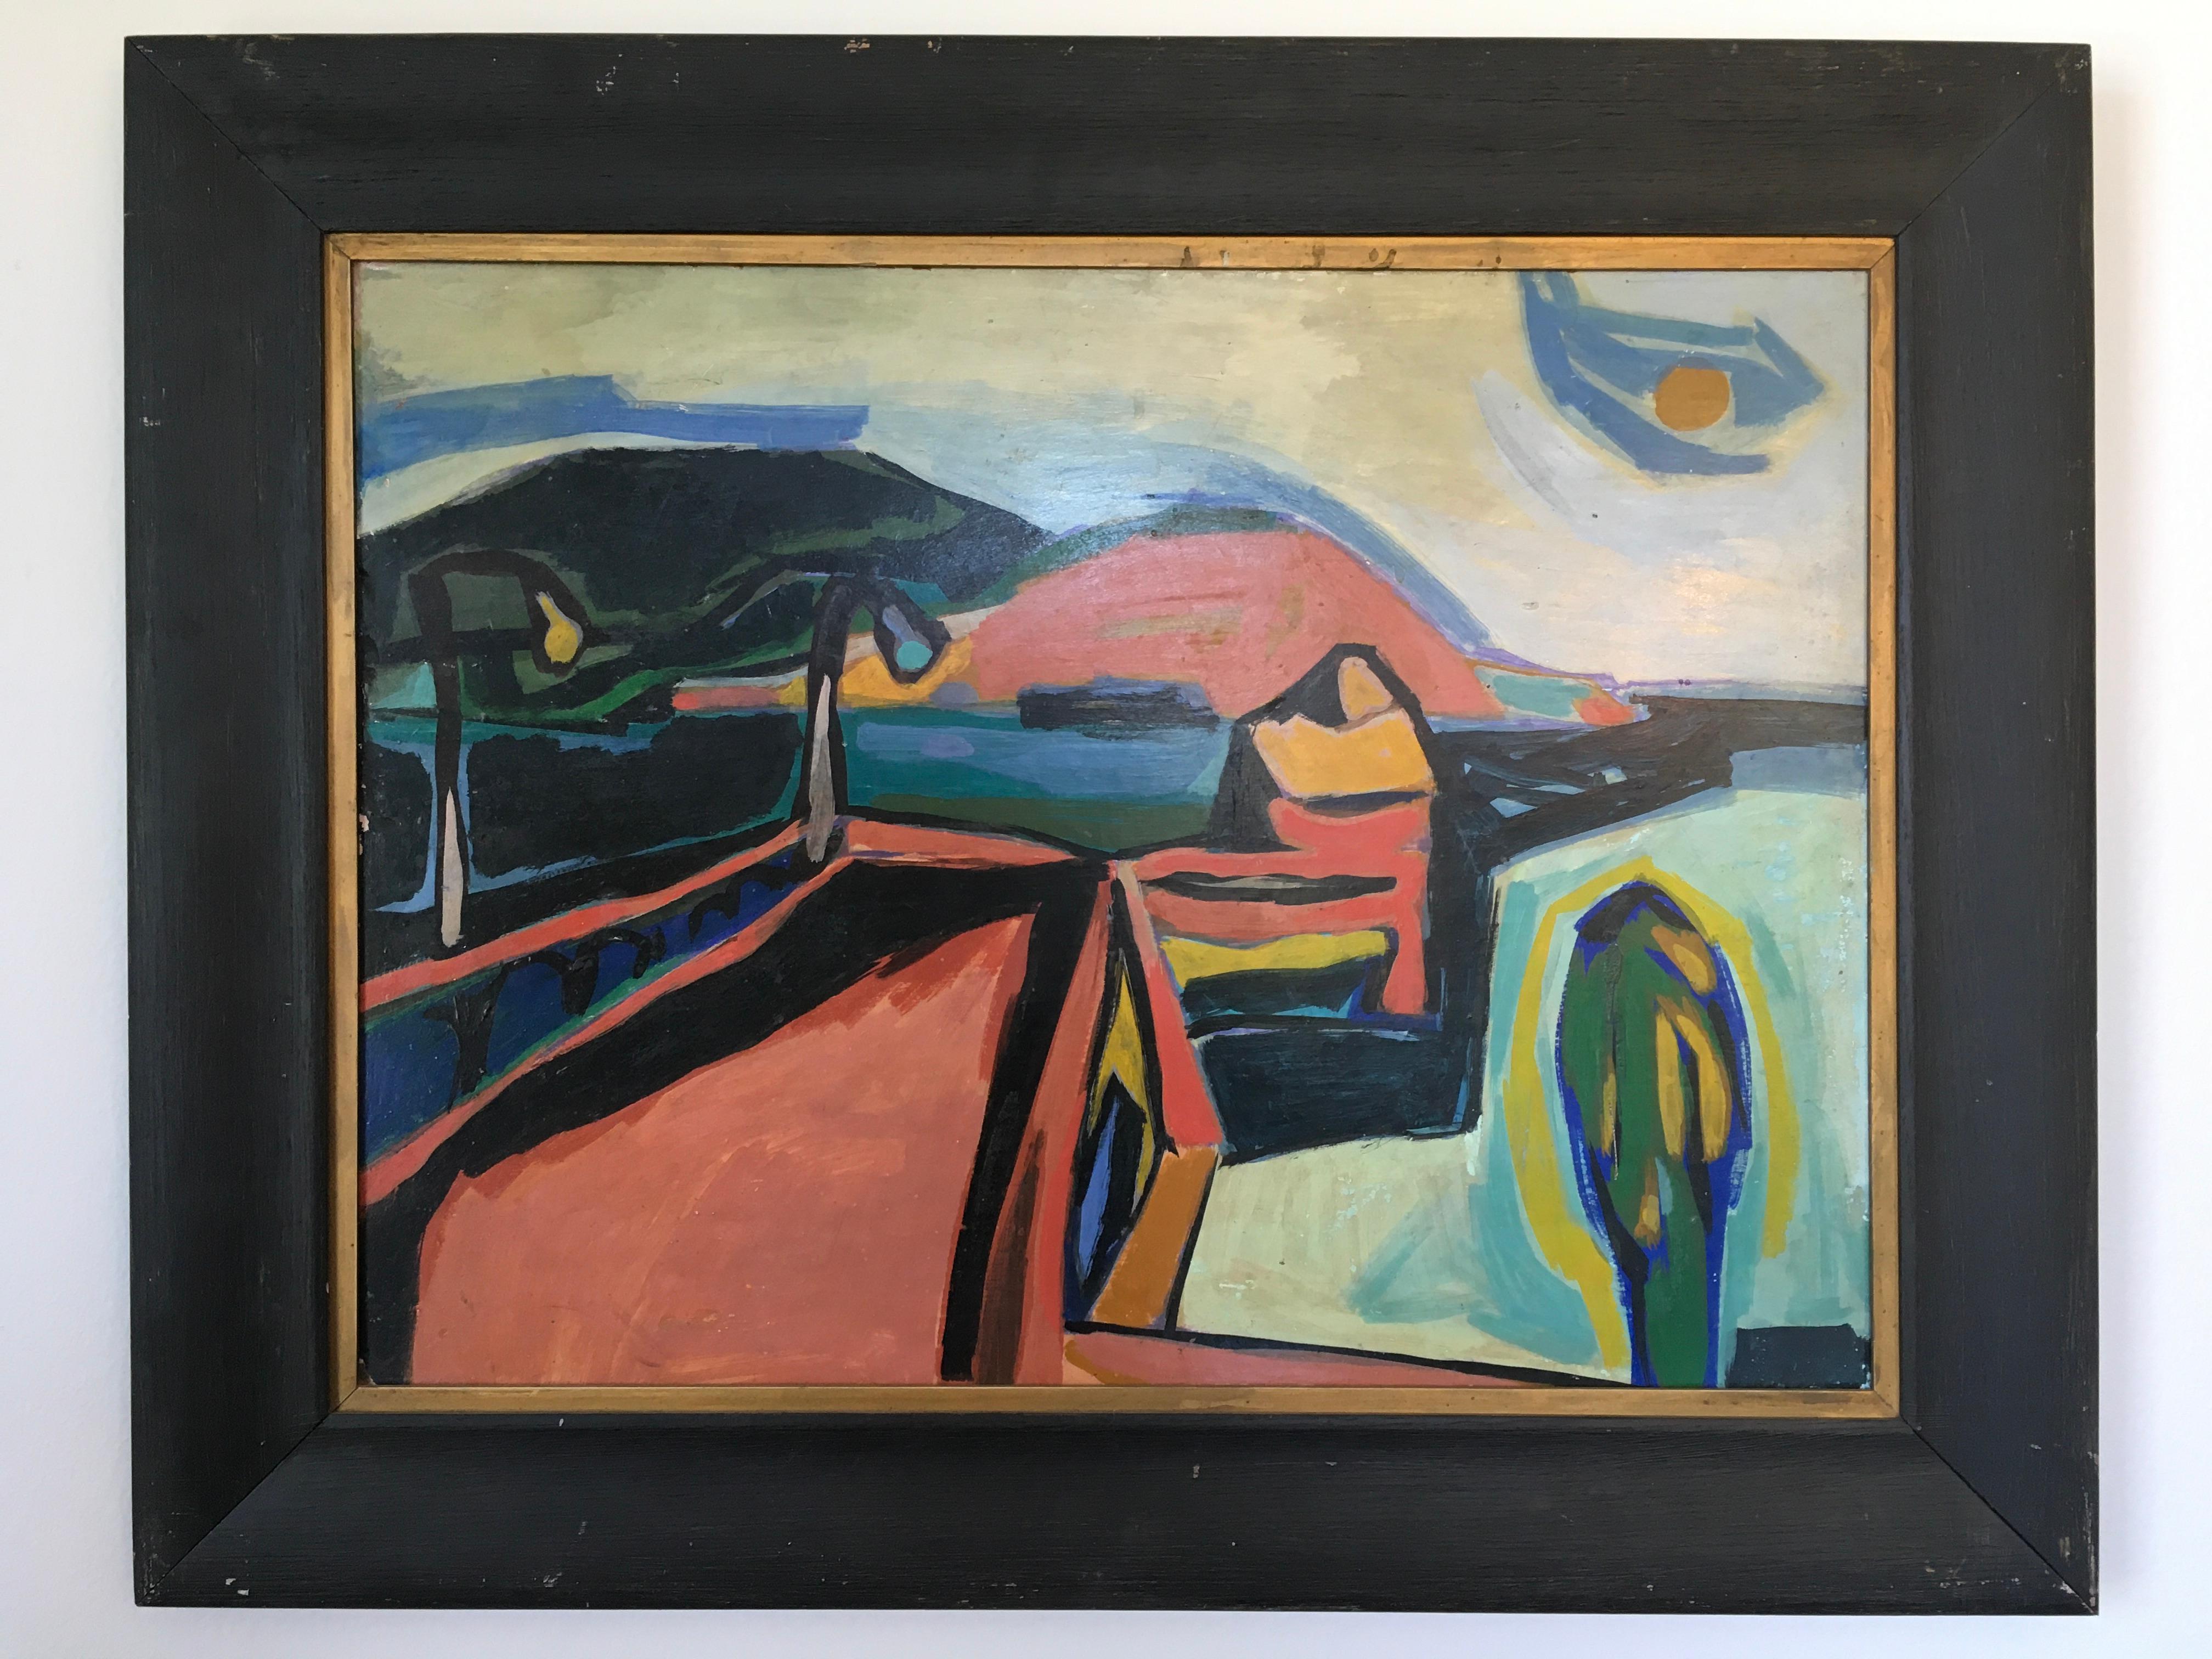 Katherine Westphals Öl-auf-Karton-Gemälde mit dem Titel "Abstrakte Landschaft" verkörpert die stilistischen Qualitäten der abstrakten Malerei. Mit einer vielfältigen Farbpalette aus Orange-, Rot-, Gelb-, Blau- und Grüntönen schafft Westphal ein